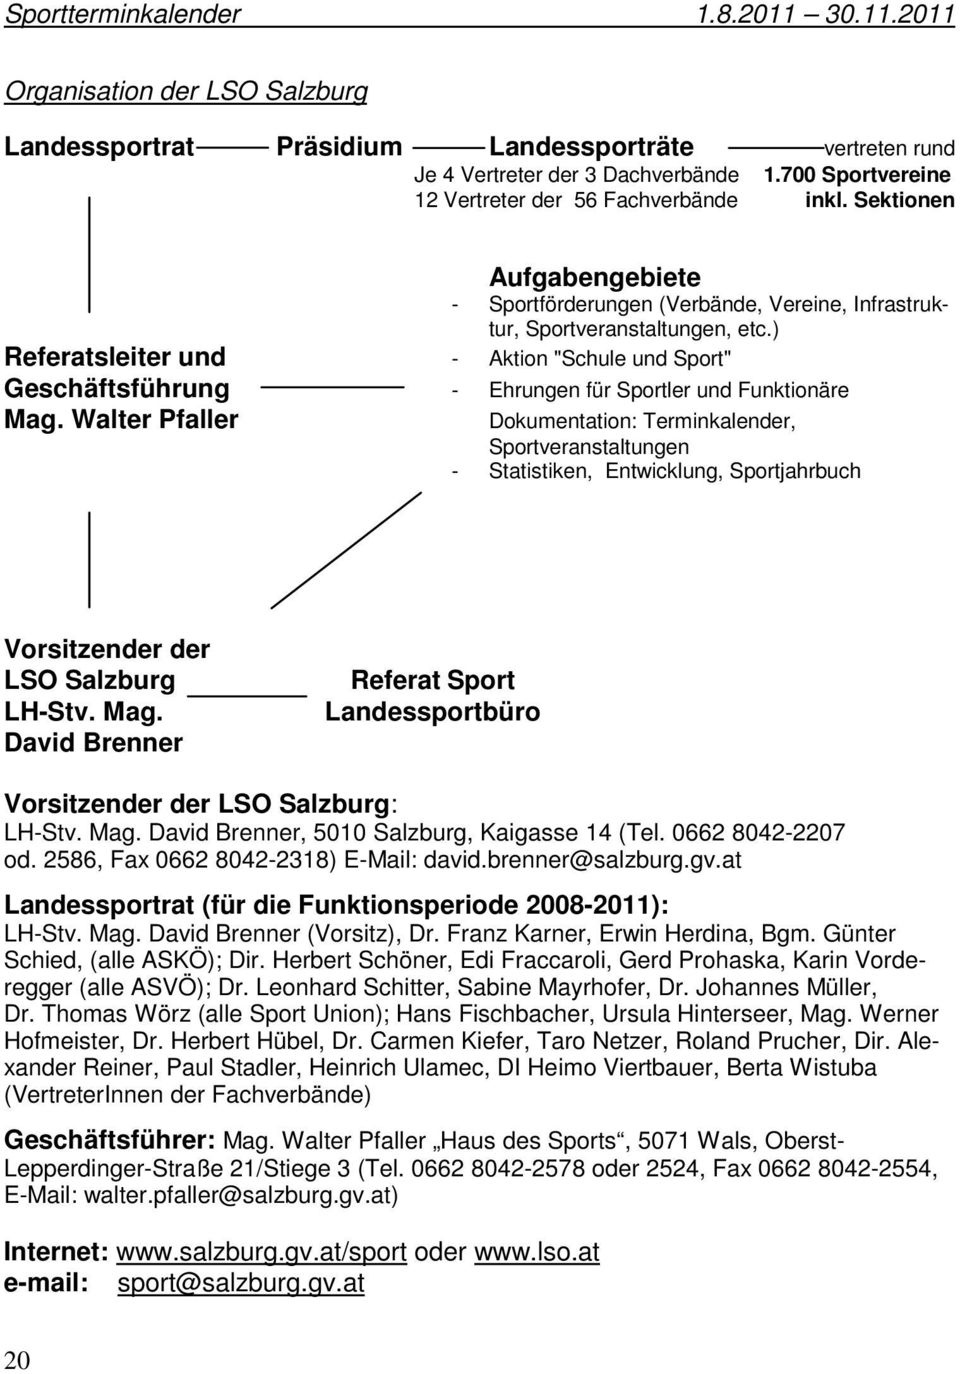 ) Referatsleiter und - Aktion "Schule und Sport" Geschäftsführung - Ehrungen für Sportler und Funktionäre Mag.